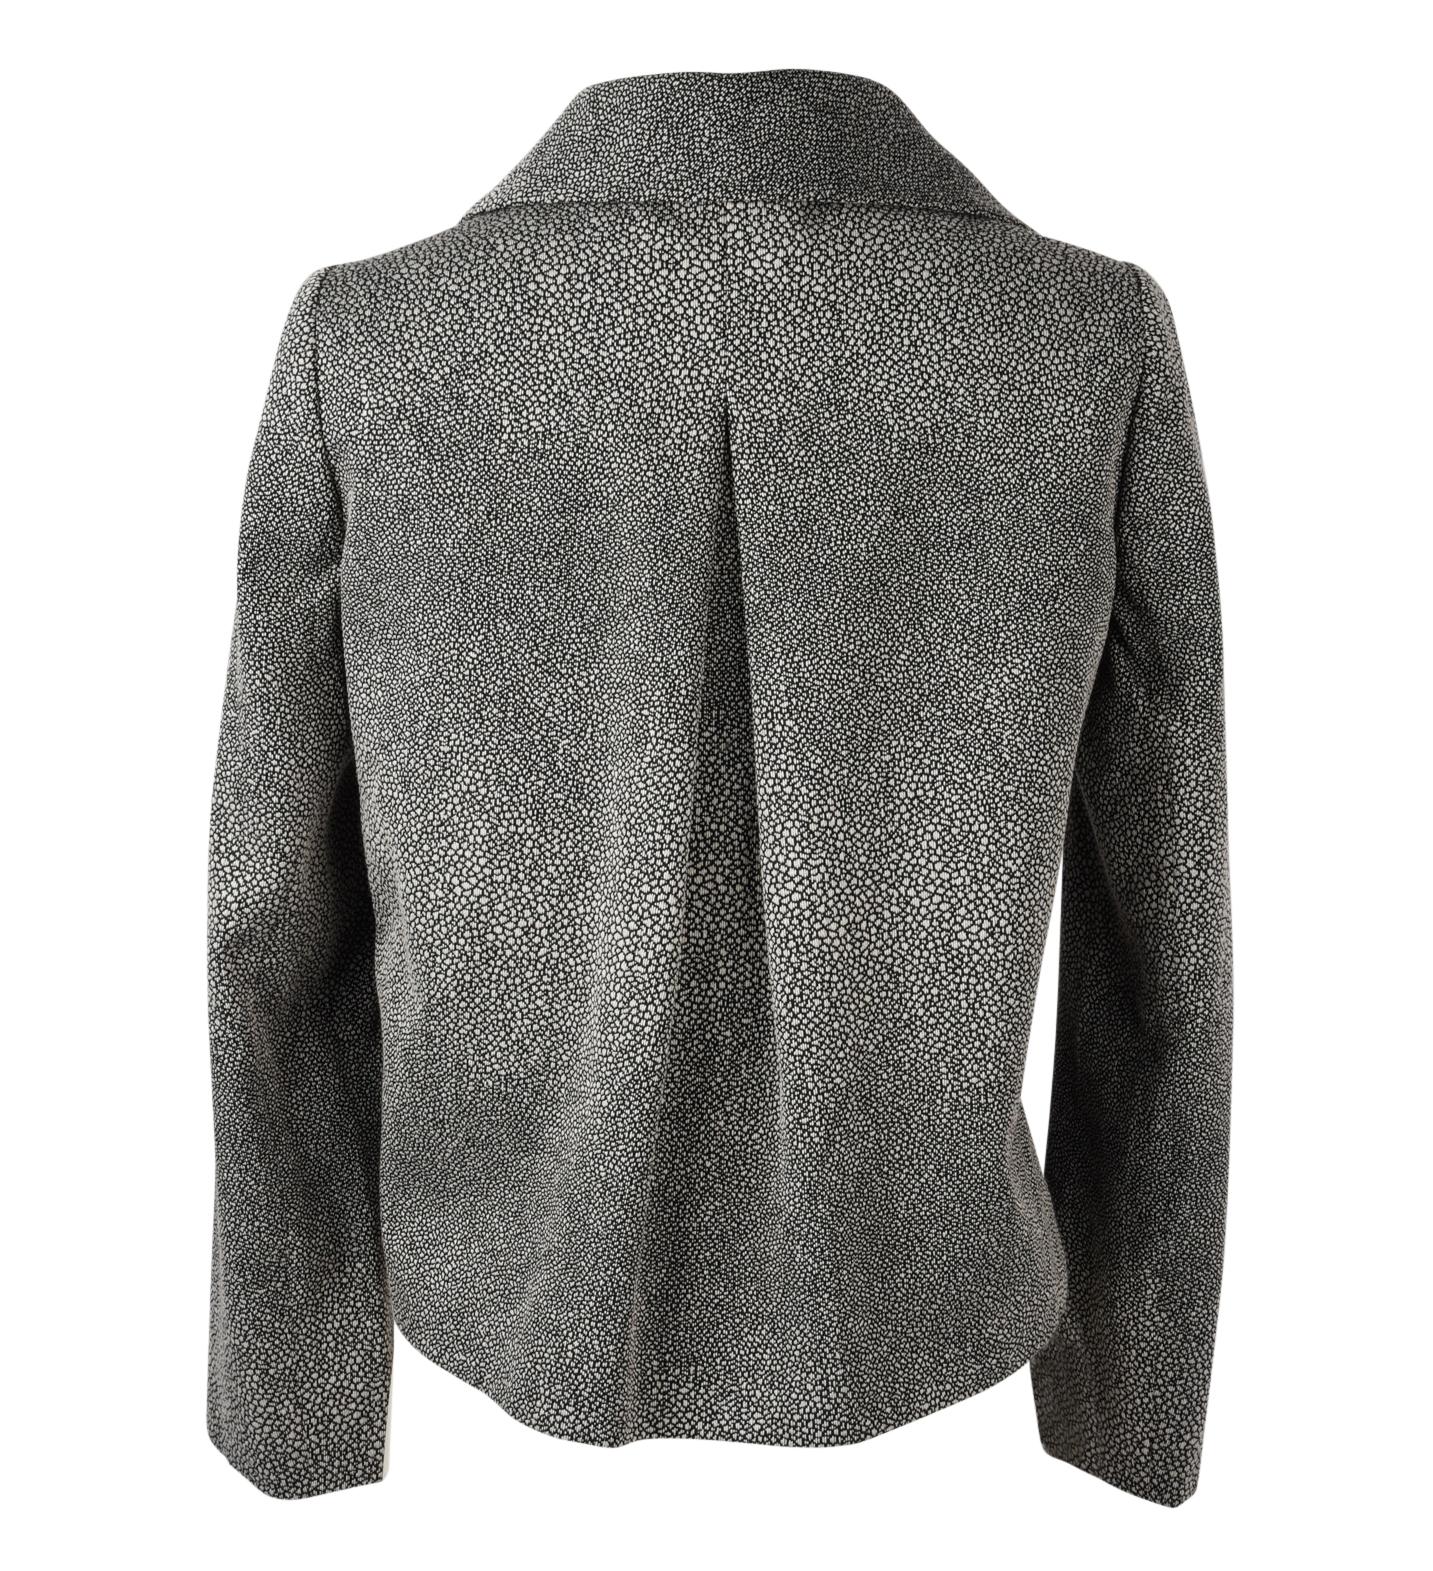 Giorgio Armani Jacket Unique Stingray Print Black / Gray 38 / 6 New 3